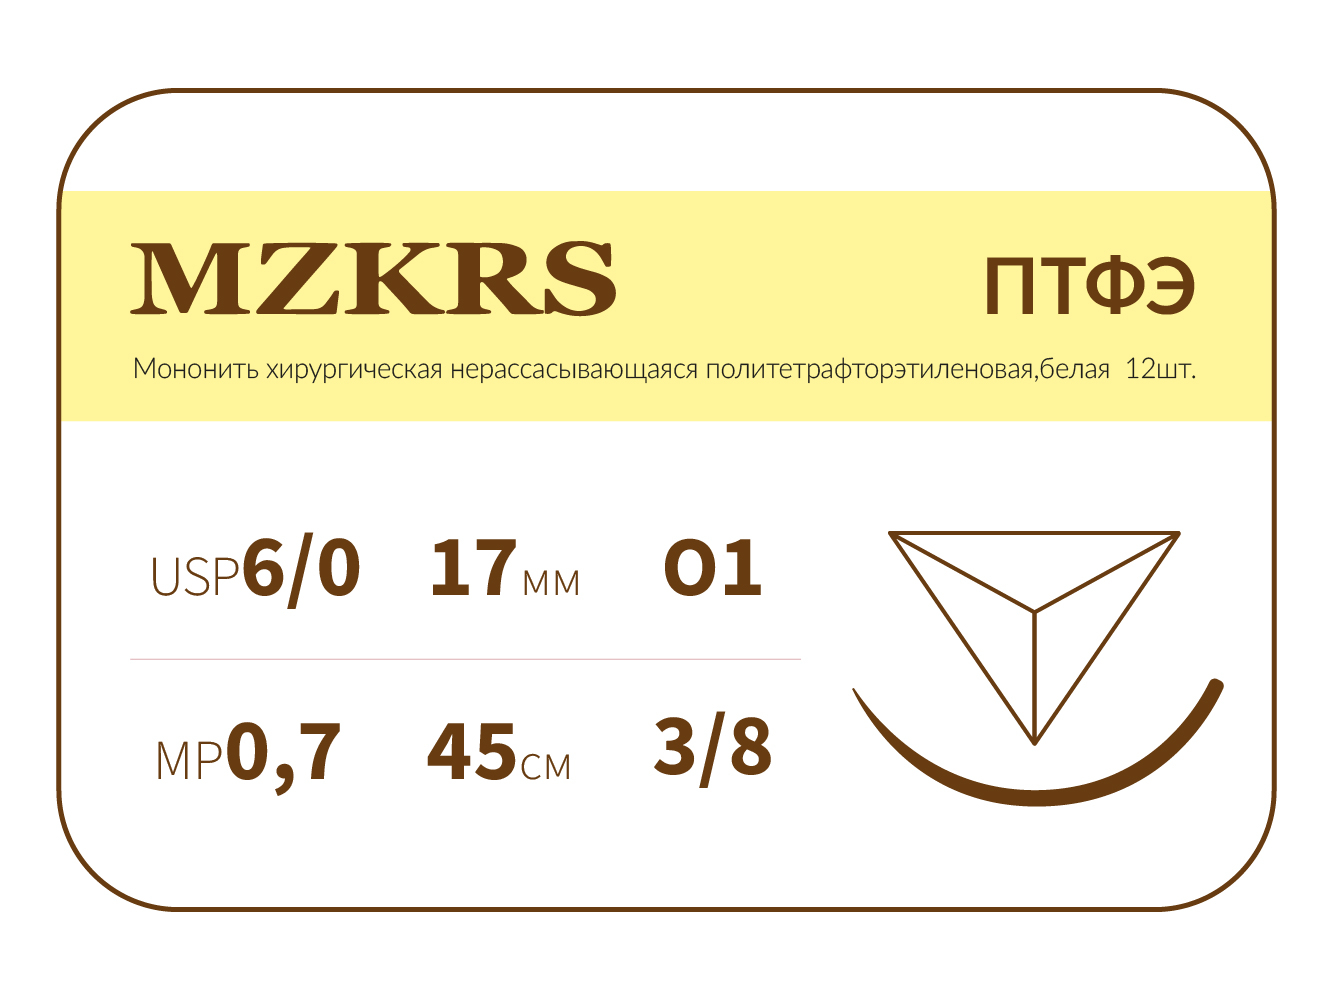 1738О1-Premium 6/0 (0.7) 45 ПТФЭ хирургическая нить политетрафторэтиленовая, MZKRS (Россия)